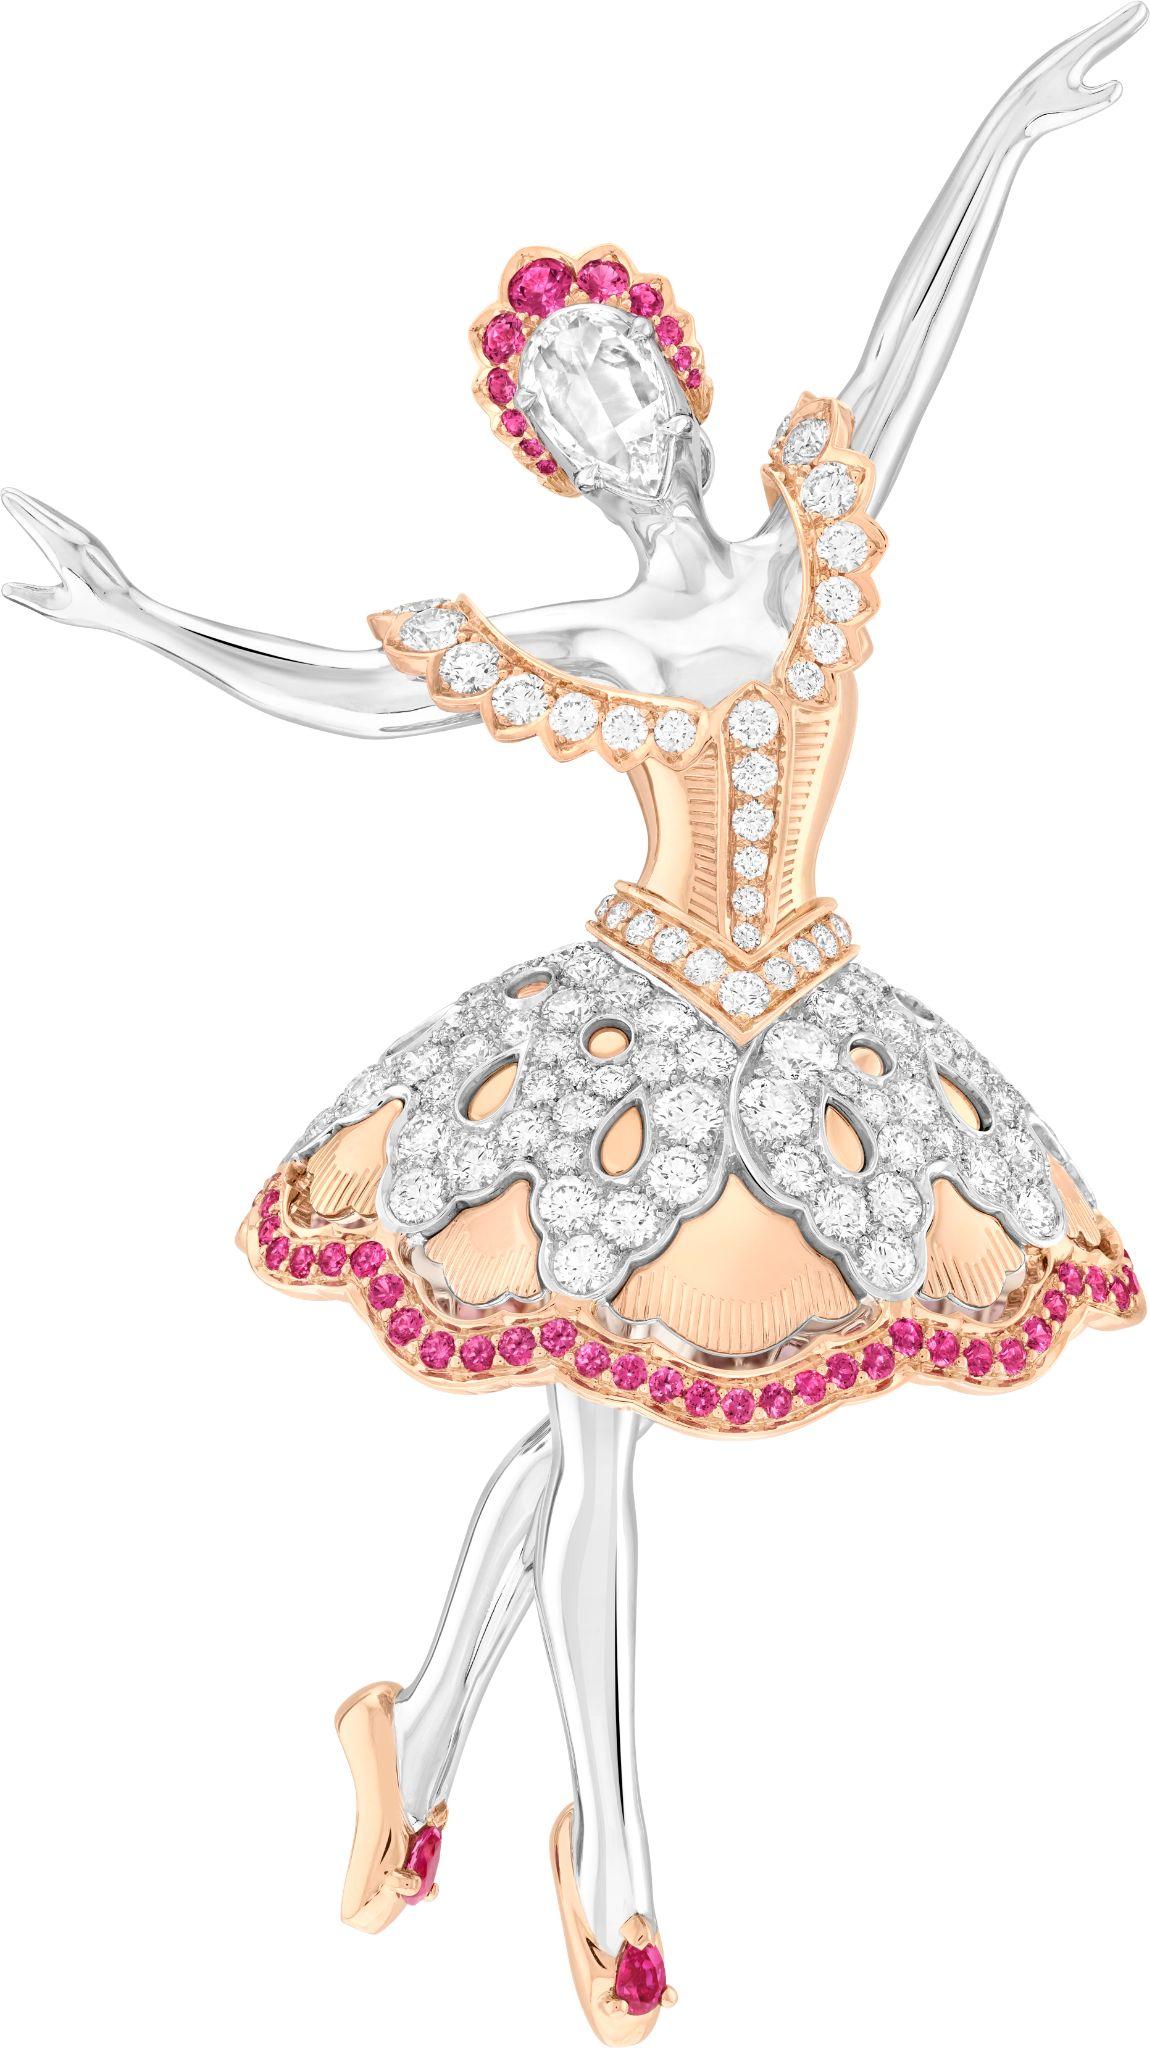 Vũ điệu ballet trên trang sức Van Cleef & Arpels